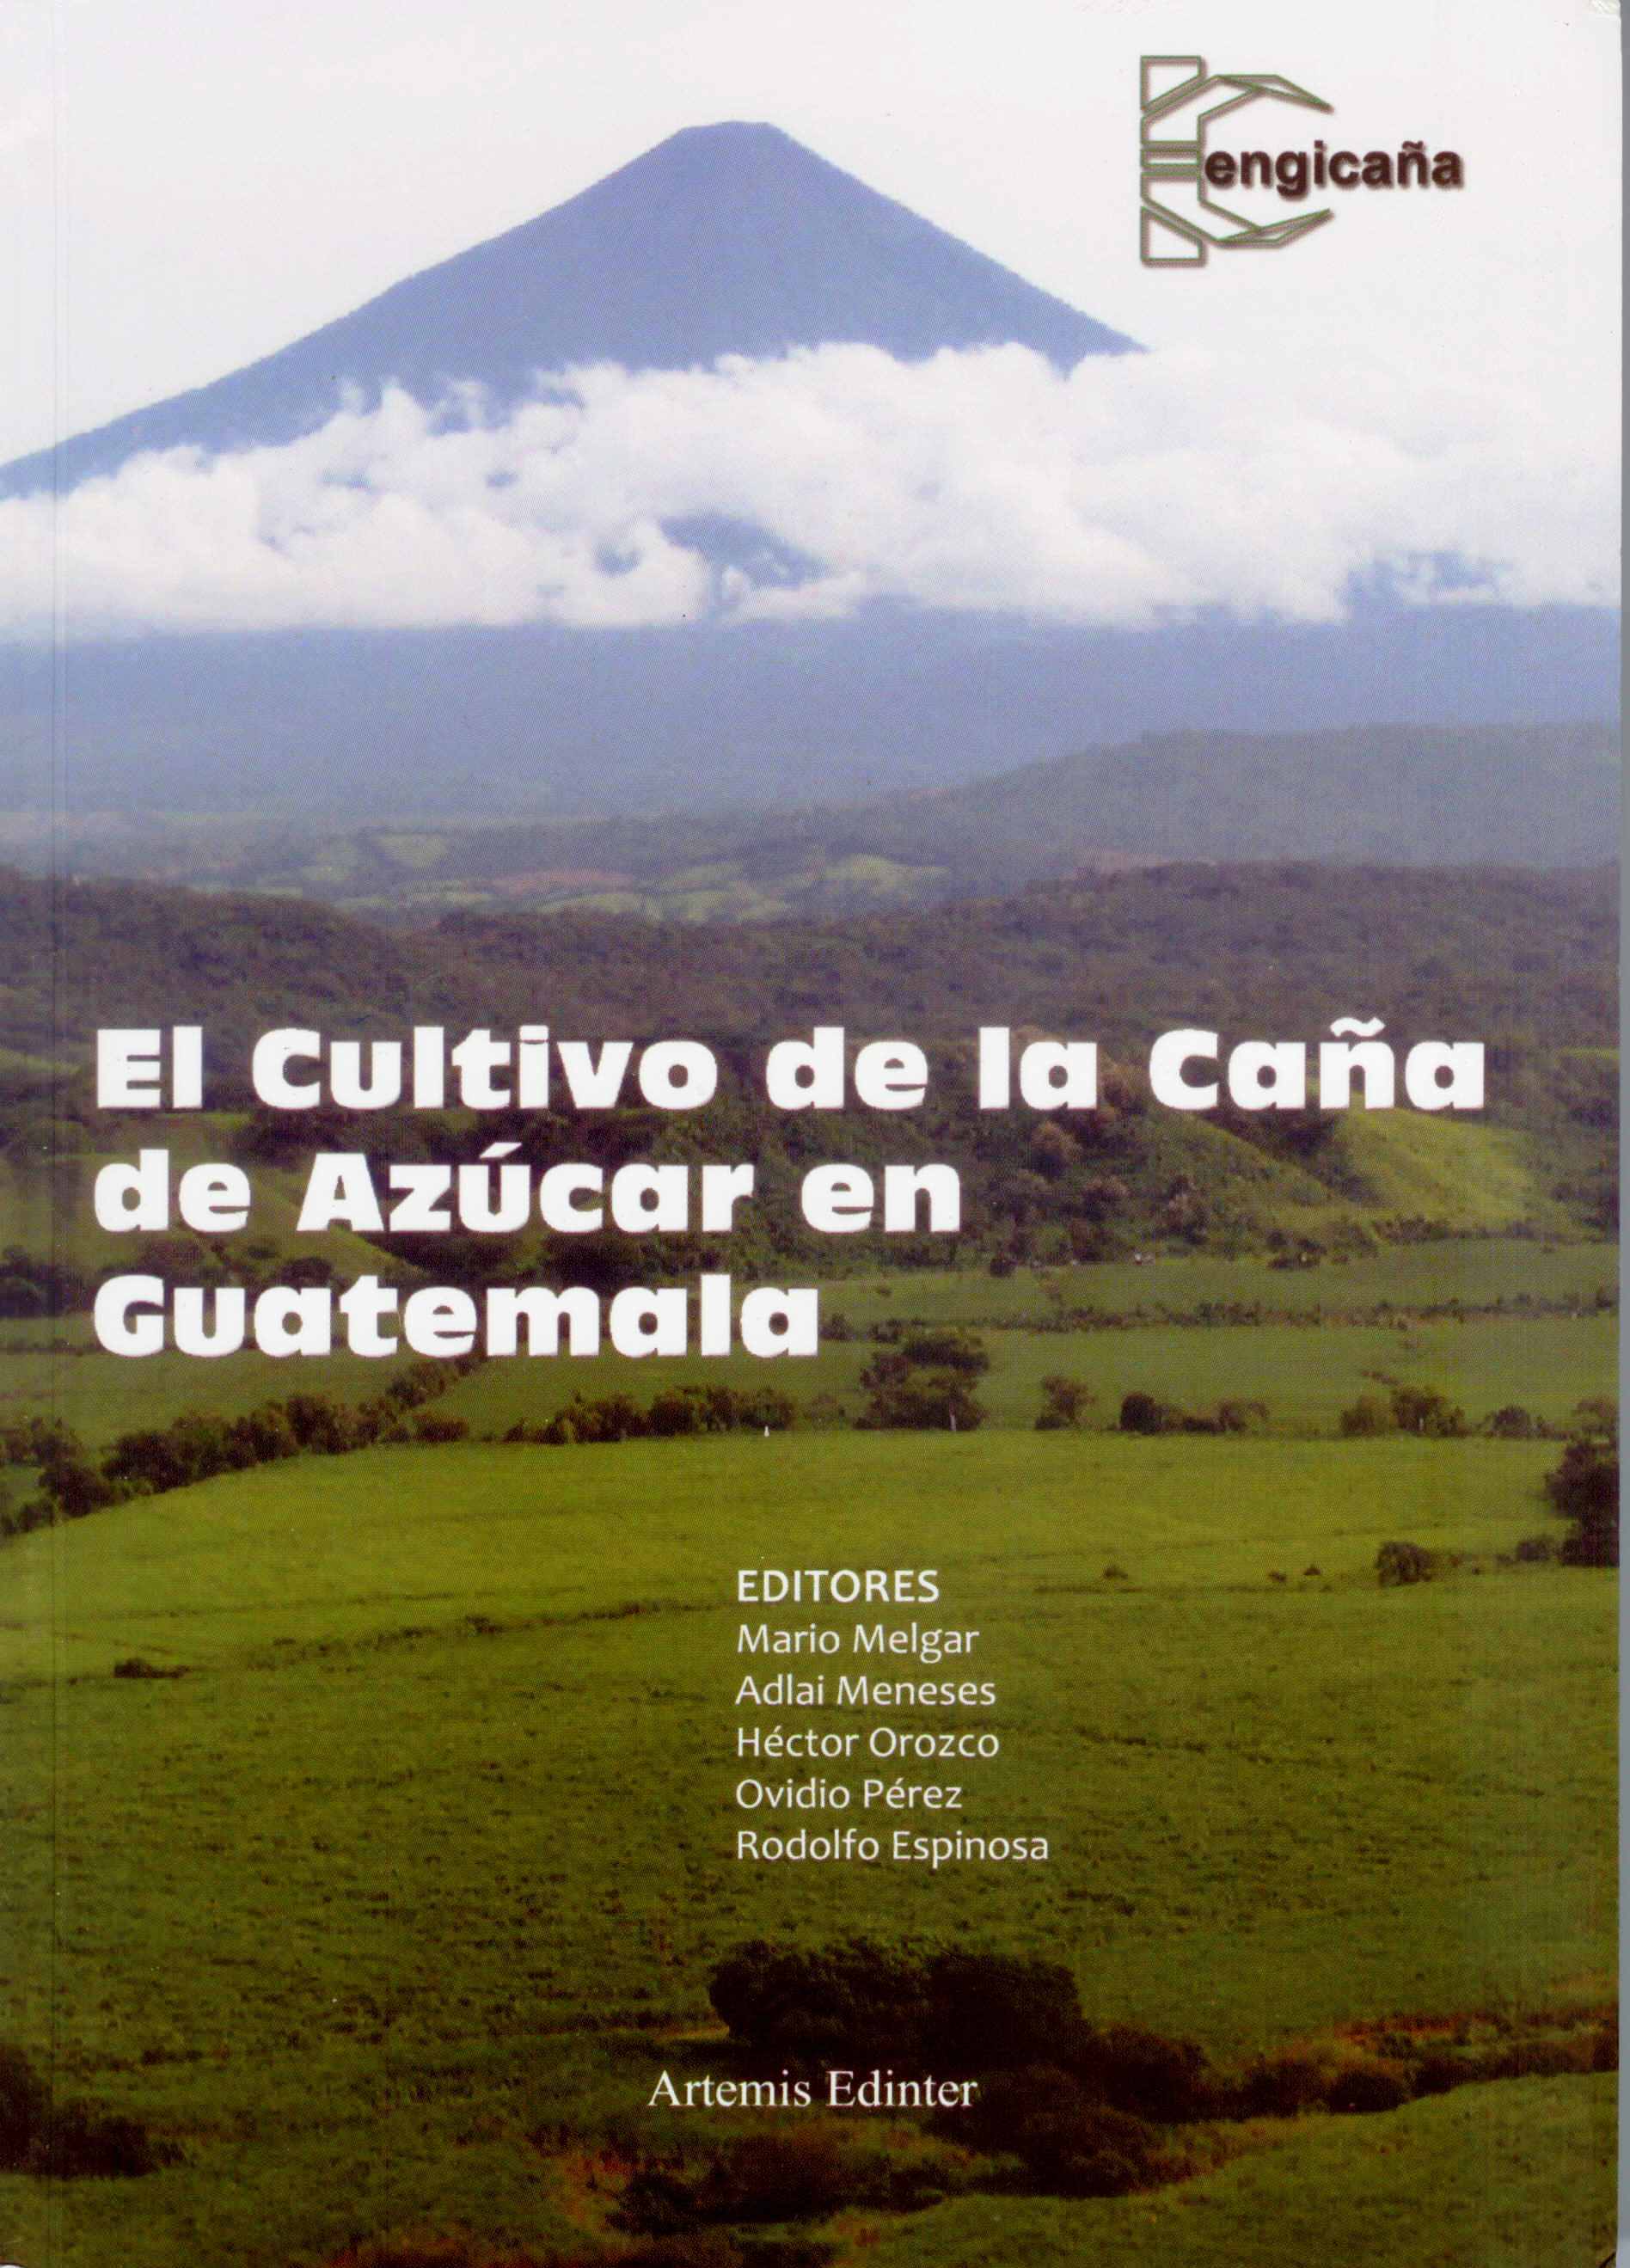 http://www.cenicana.org/investigacion/seica/imagenes_libros/2012/nov_2012/caratula_cultivo_cana.jpg